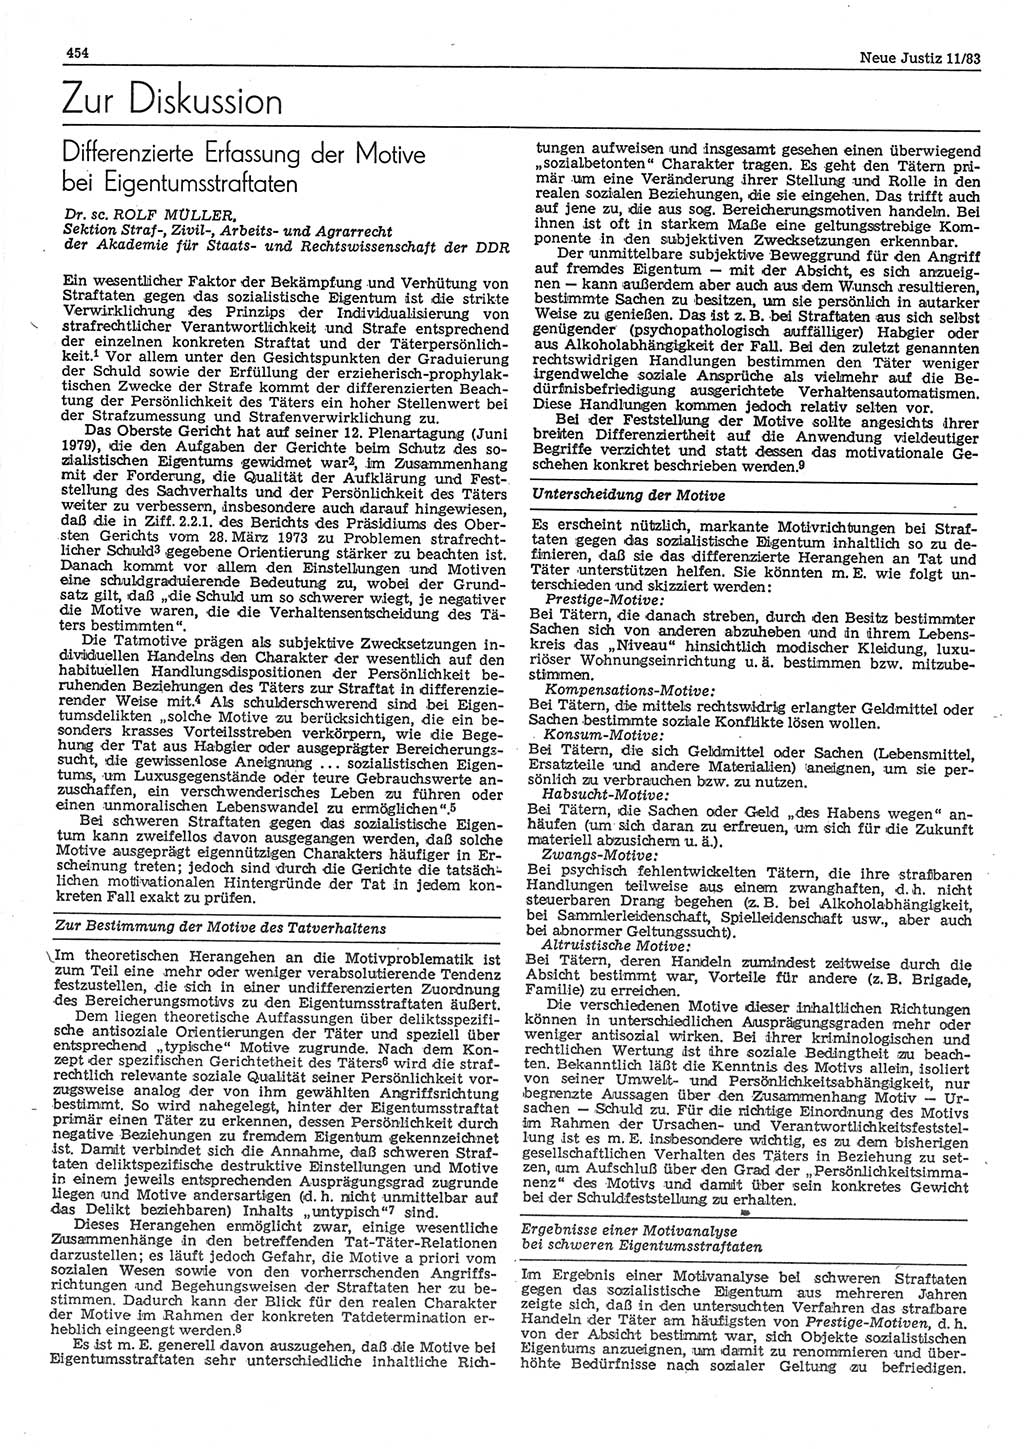 Neue Justiz (NJ), Zeitschrift für sozialistisches Recht und Gesetzlichkeit [Deutsche Demokratische Republik (DDR)], 37. Jahrgang 1983, Seite 454 (NJ DDR 1983, S. 454)